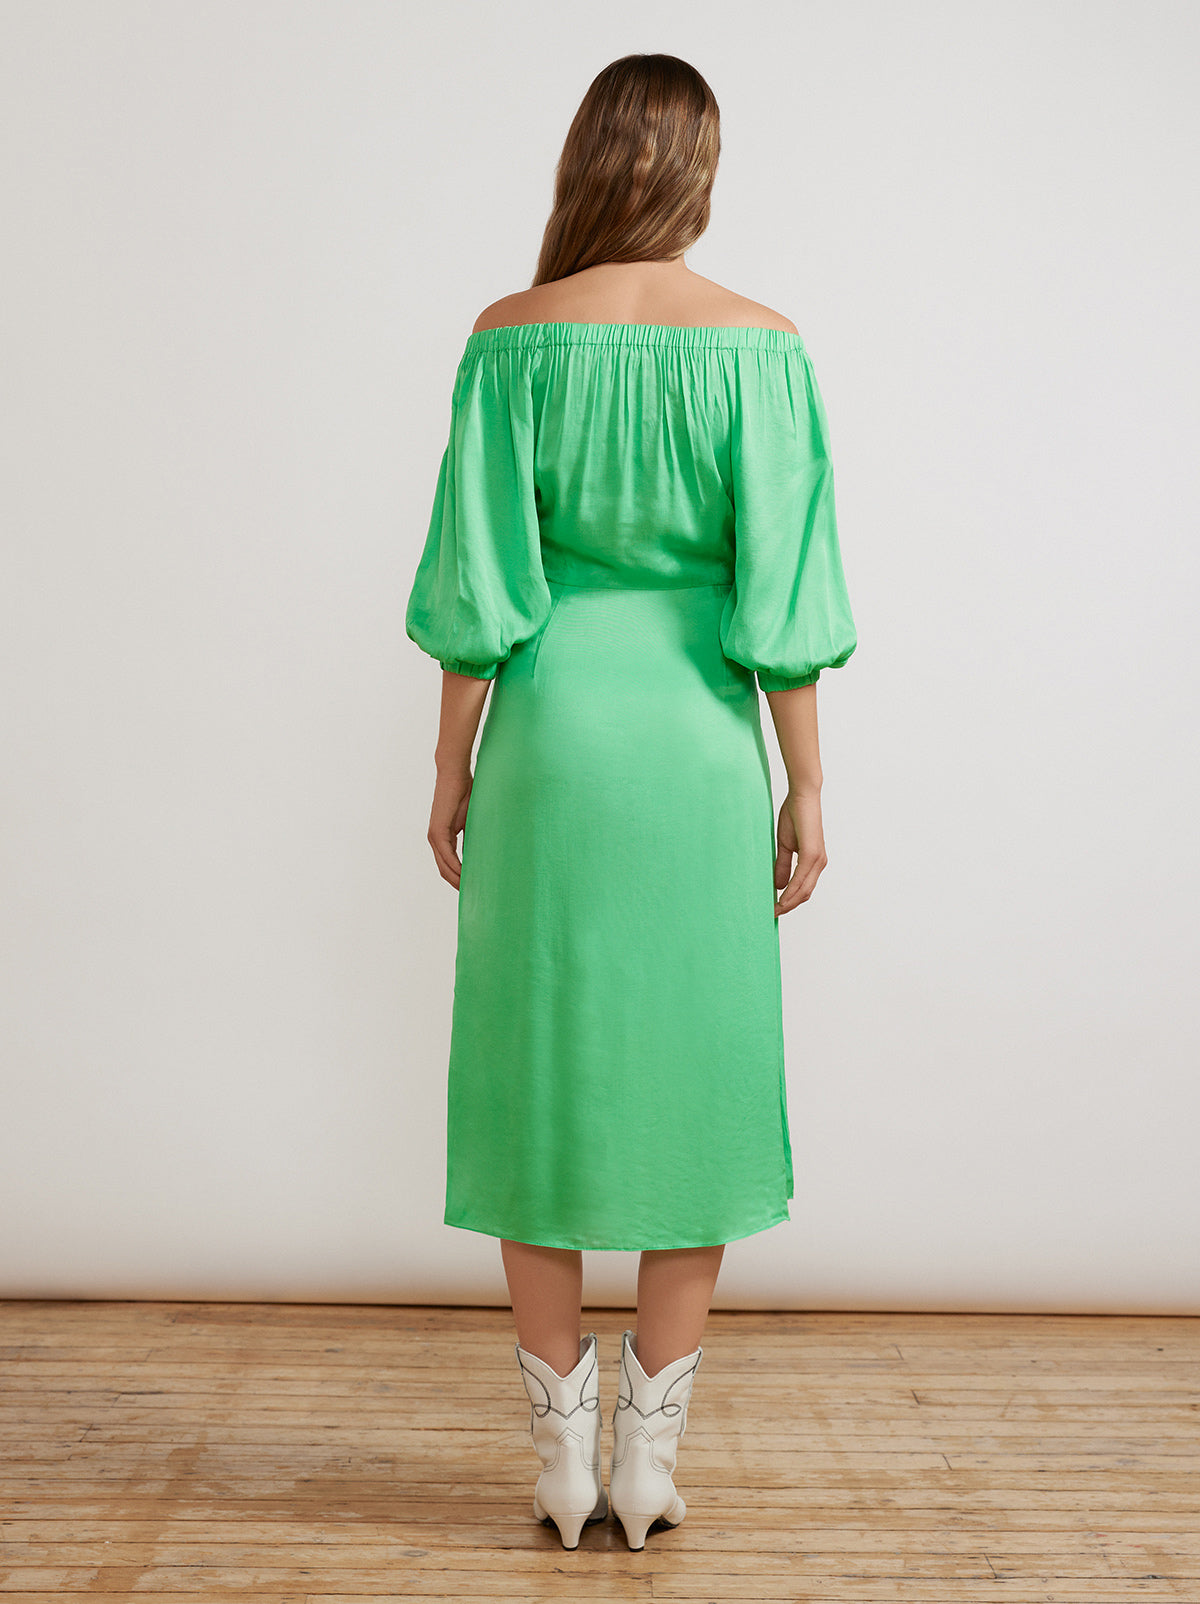 Della Apple Green Dress By KITRI Studio